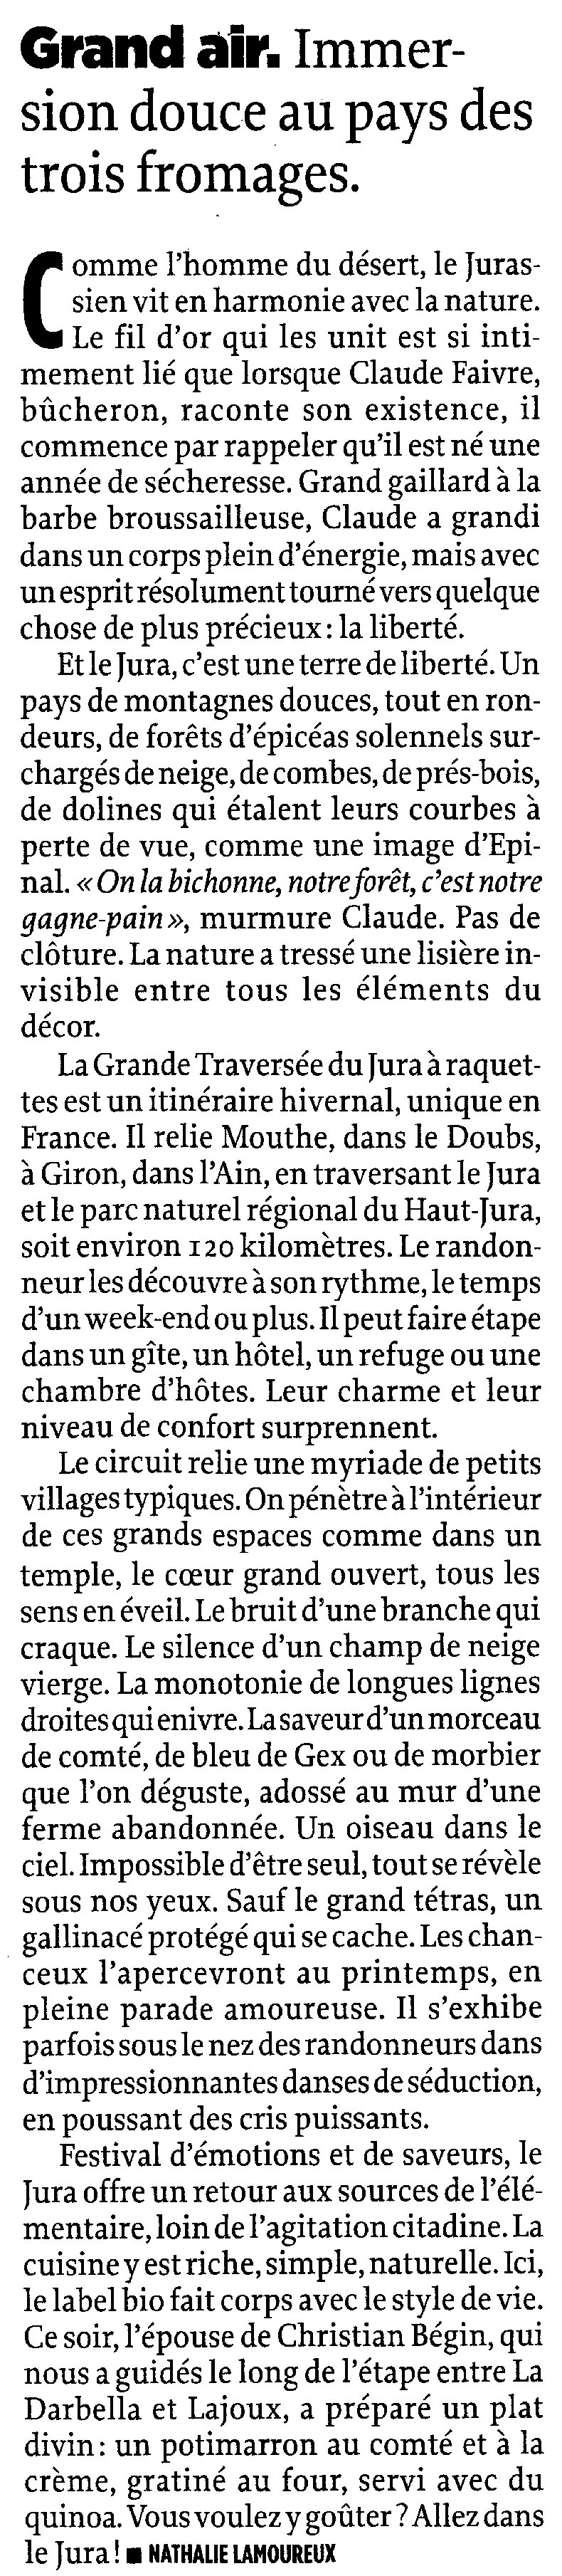 Le journal Le Point a un coup de foudre pour le Jura - 16 décembre 2010 0004